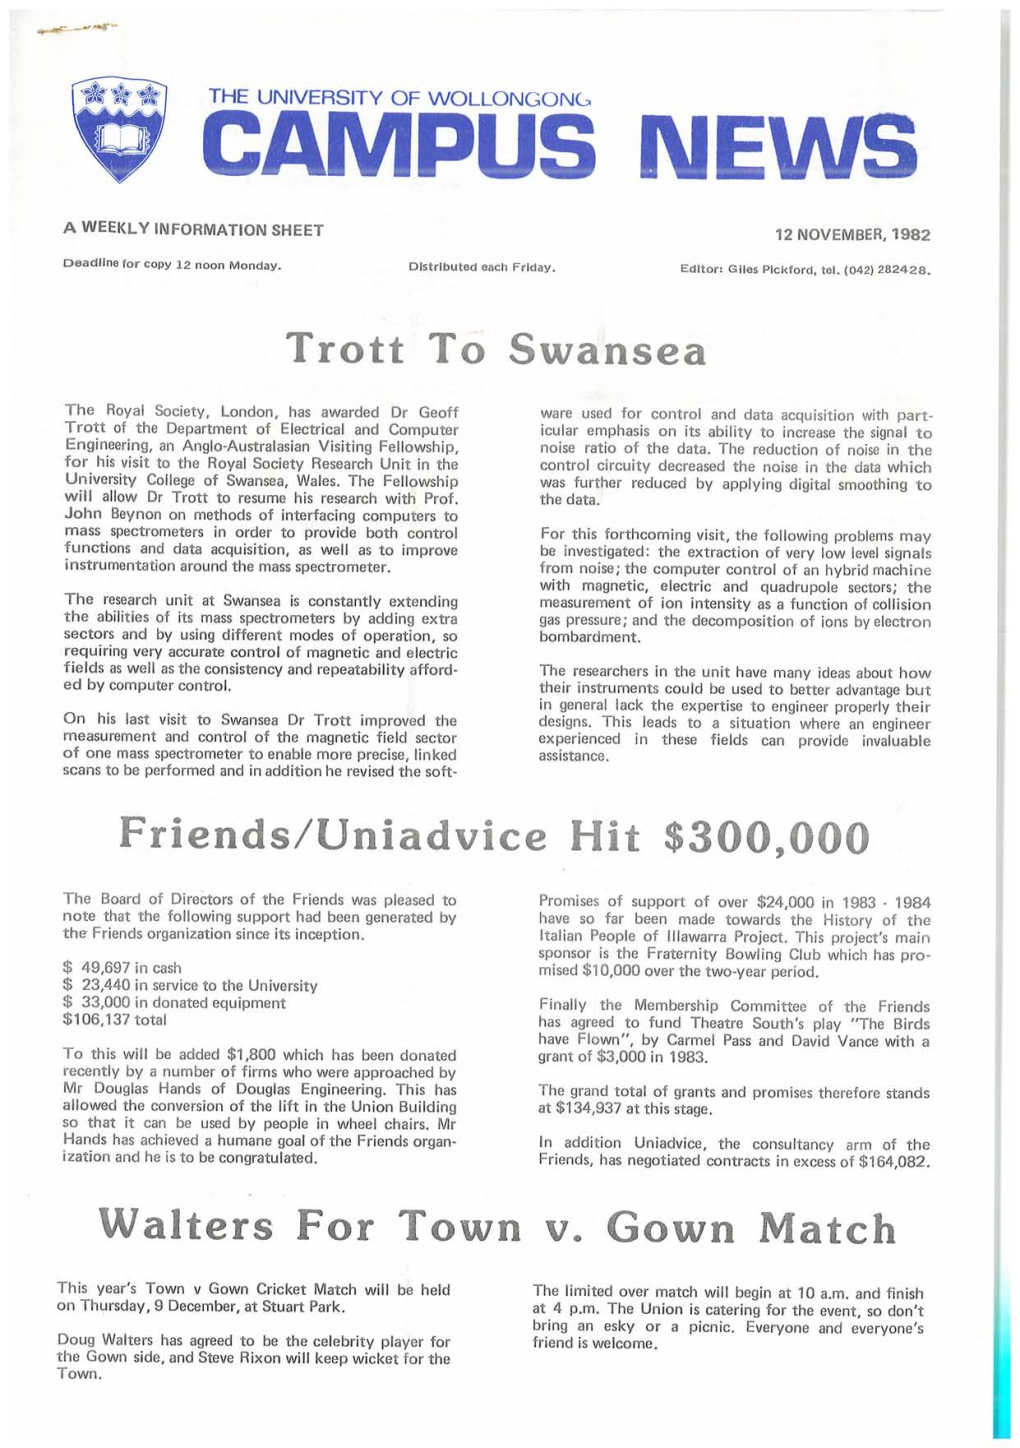 University of Wollongong Campus News 12 November 1982